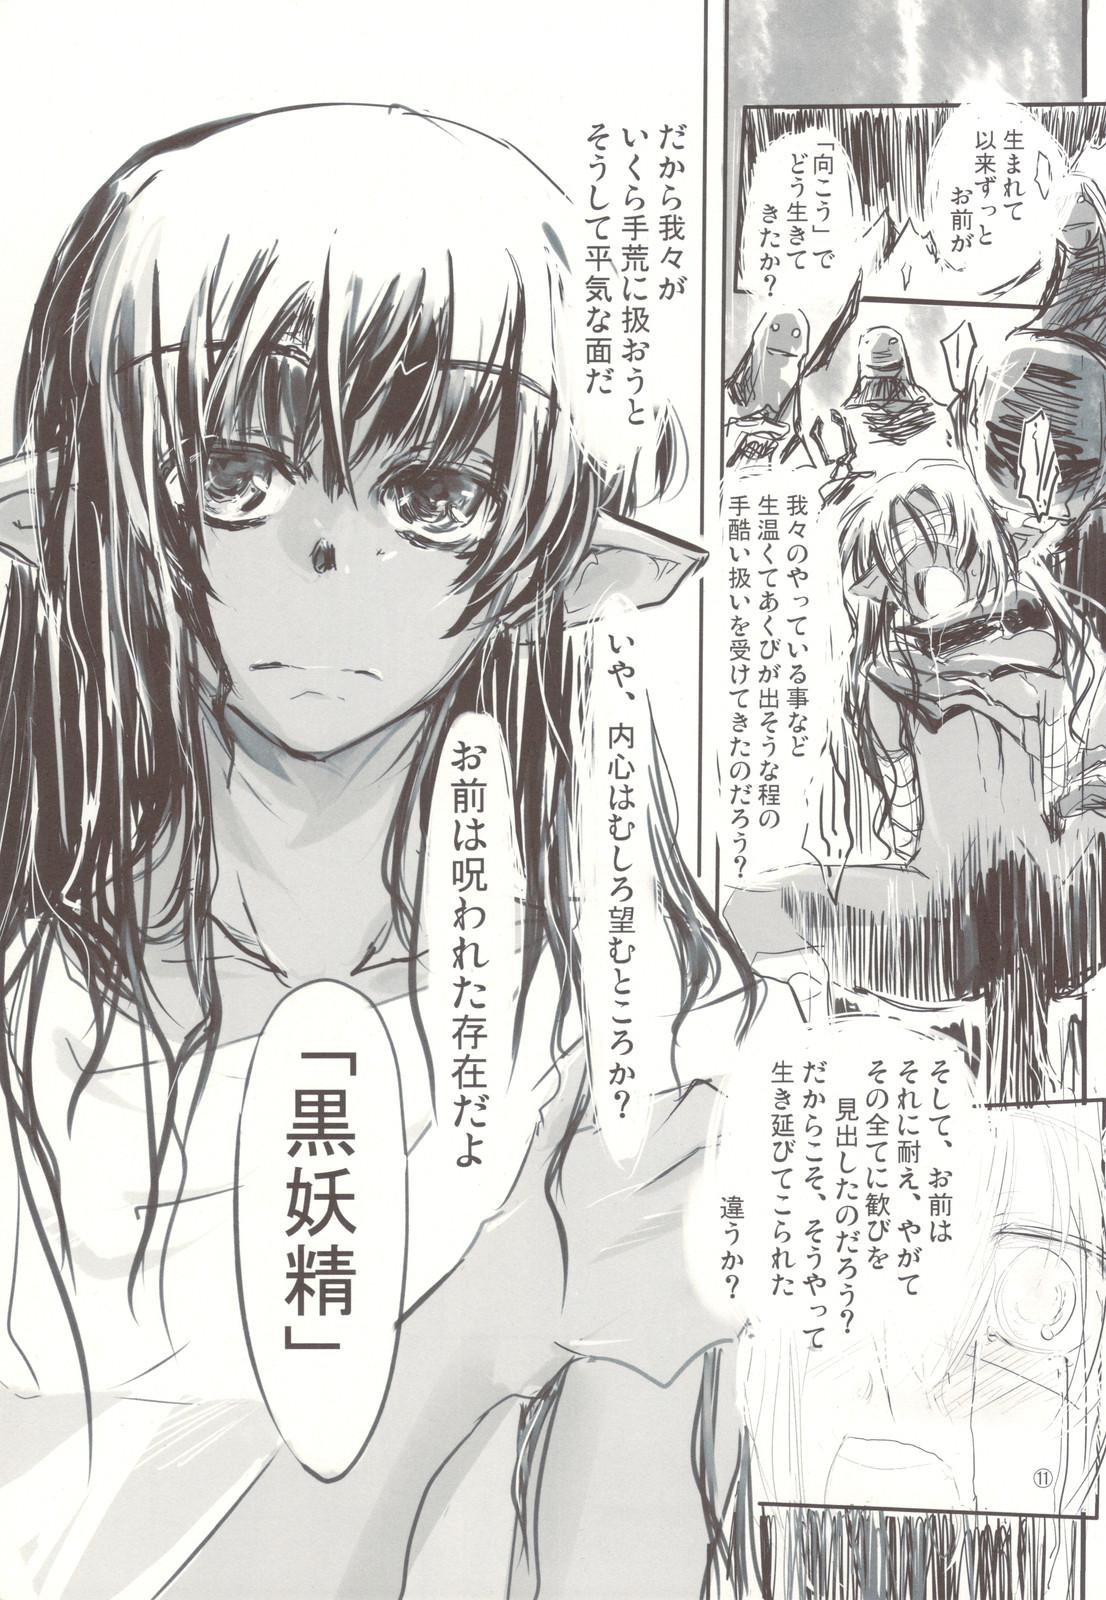 Chaturbate Kuro Yousei no Hanashi Gets - Page 11